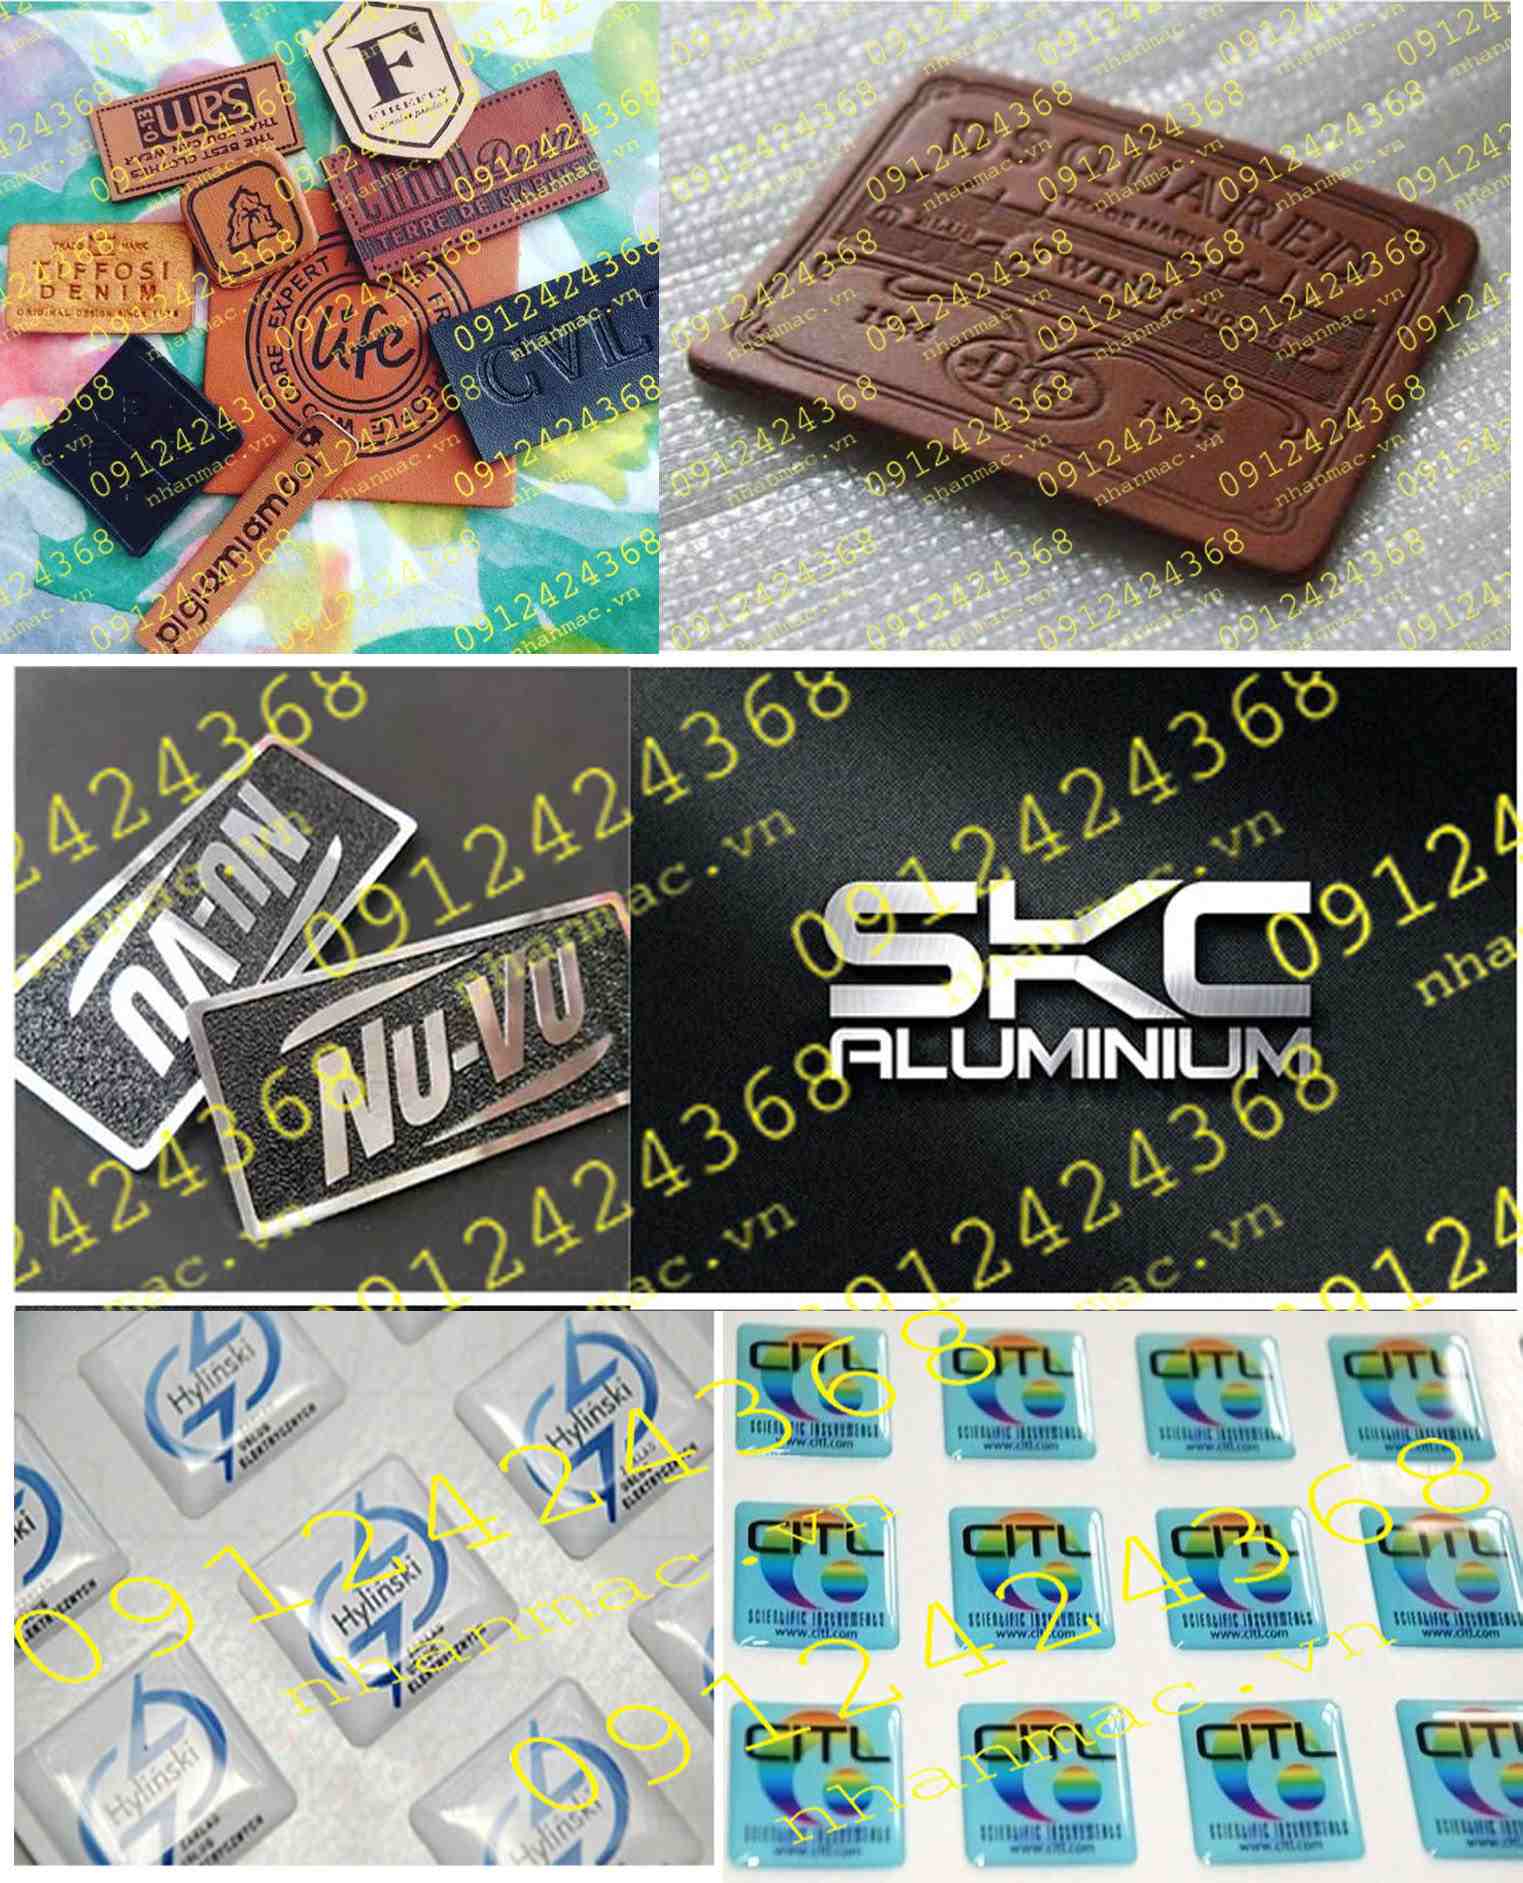 TND30- Thiên lương là nhà cung cấp đồng bộ các dòng tem nhãn mác trên nhiều loại chất liệu khác nhau